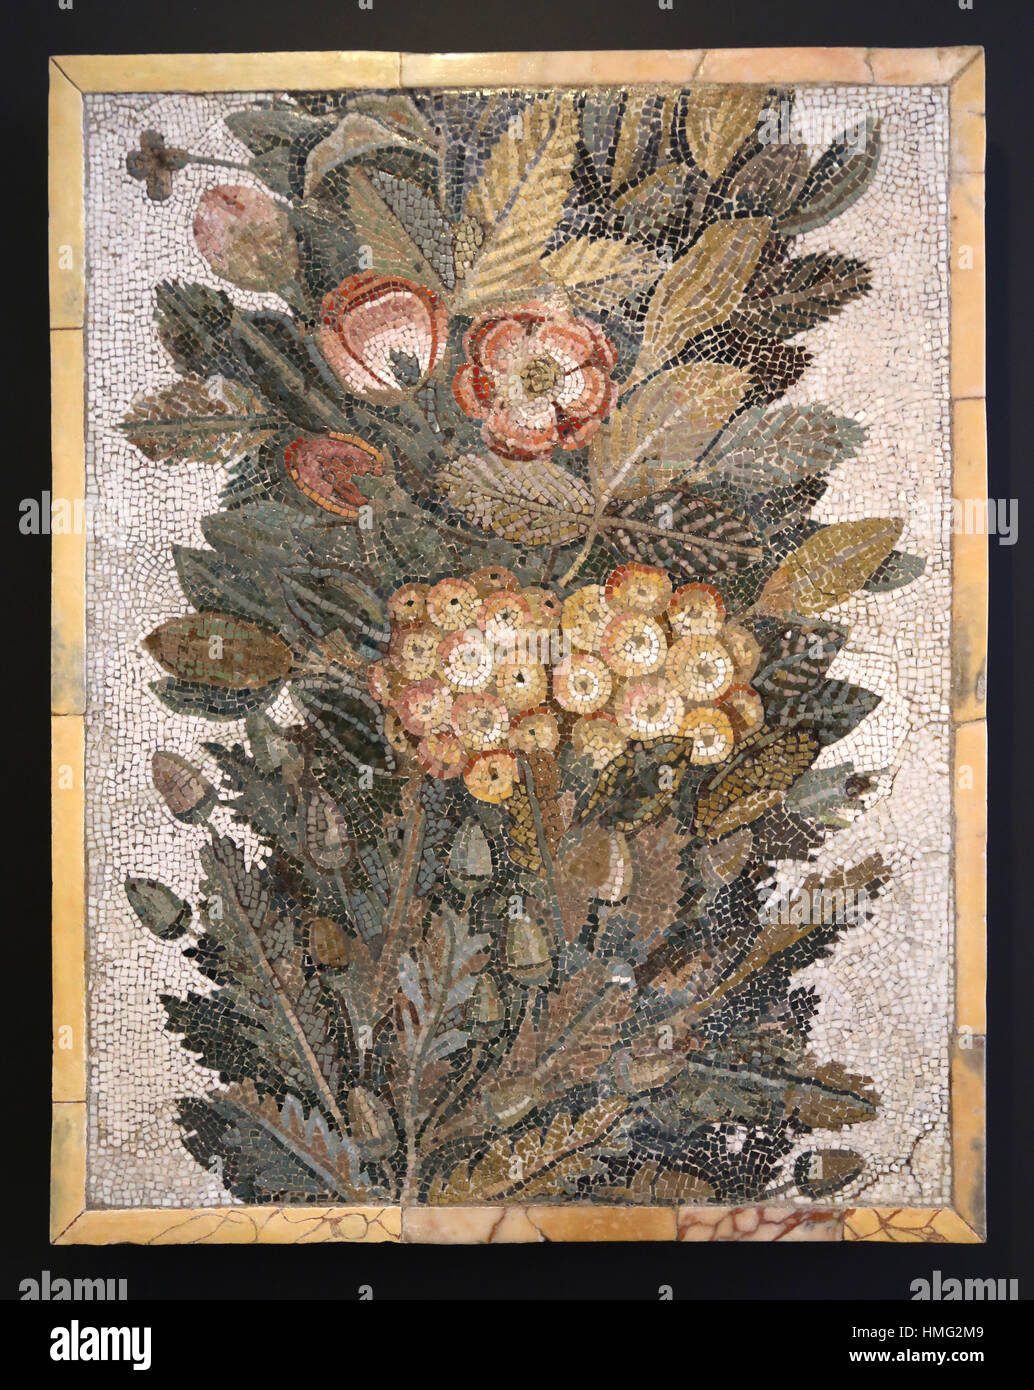 Floralen Mosaik. Kalkstein "und" glasigen einfügen. 1. Jahrhundert. Italien. Nationales Archäologisches Museum, Madrid. Spanien. Stockfoto